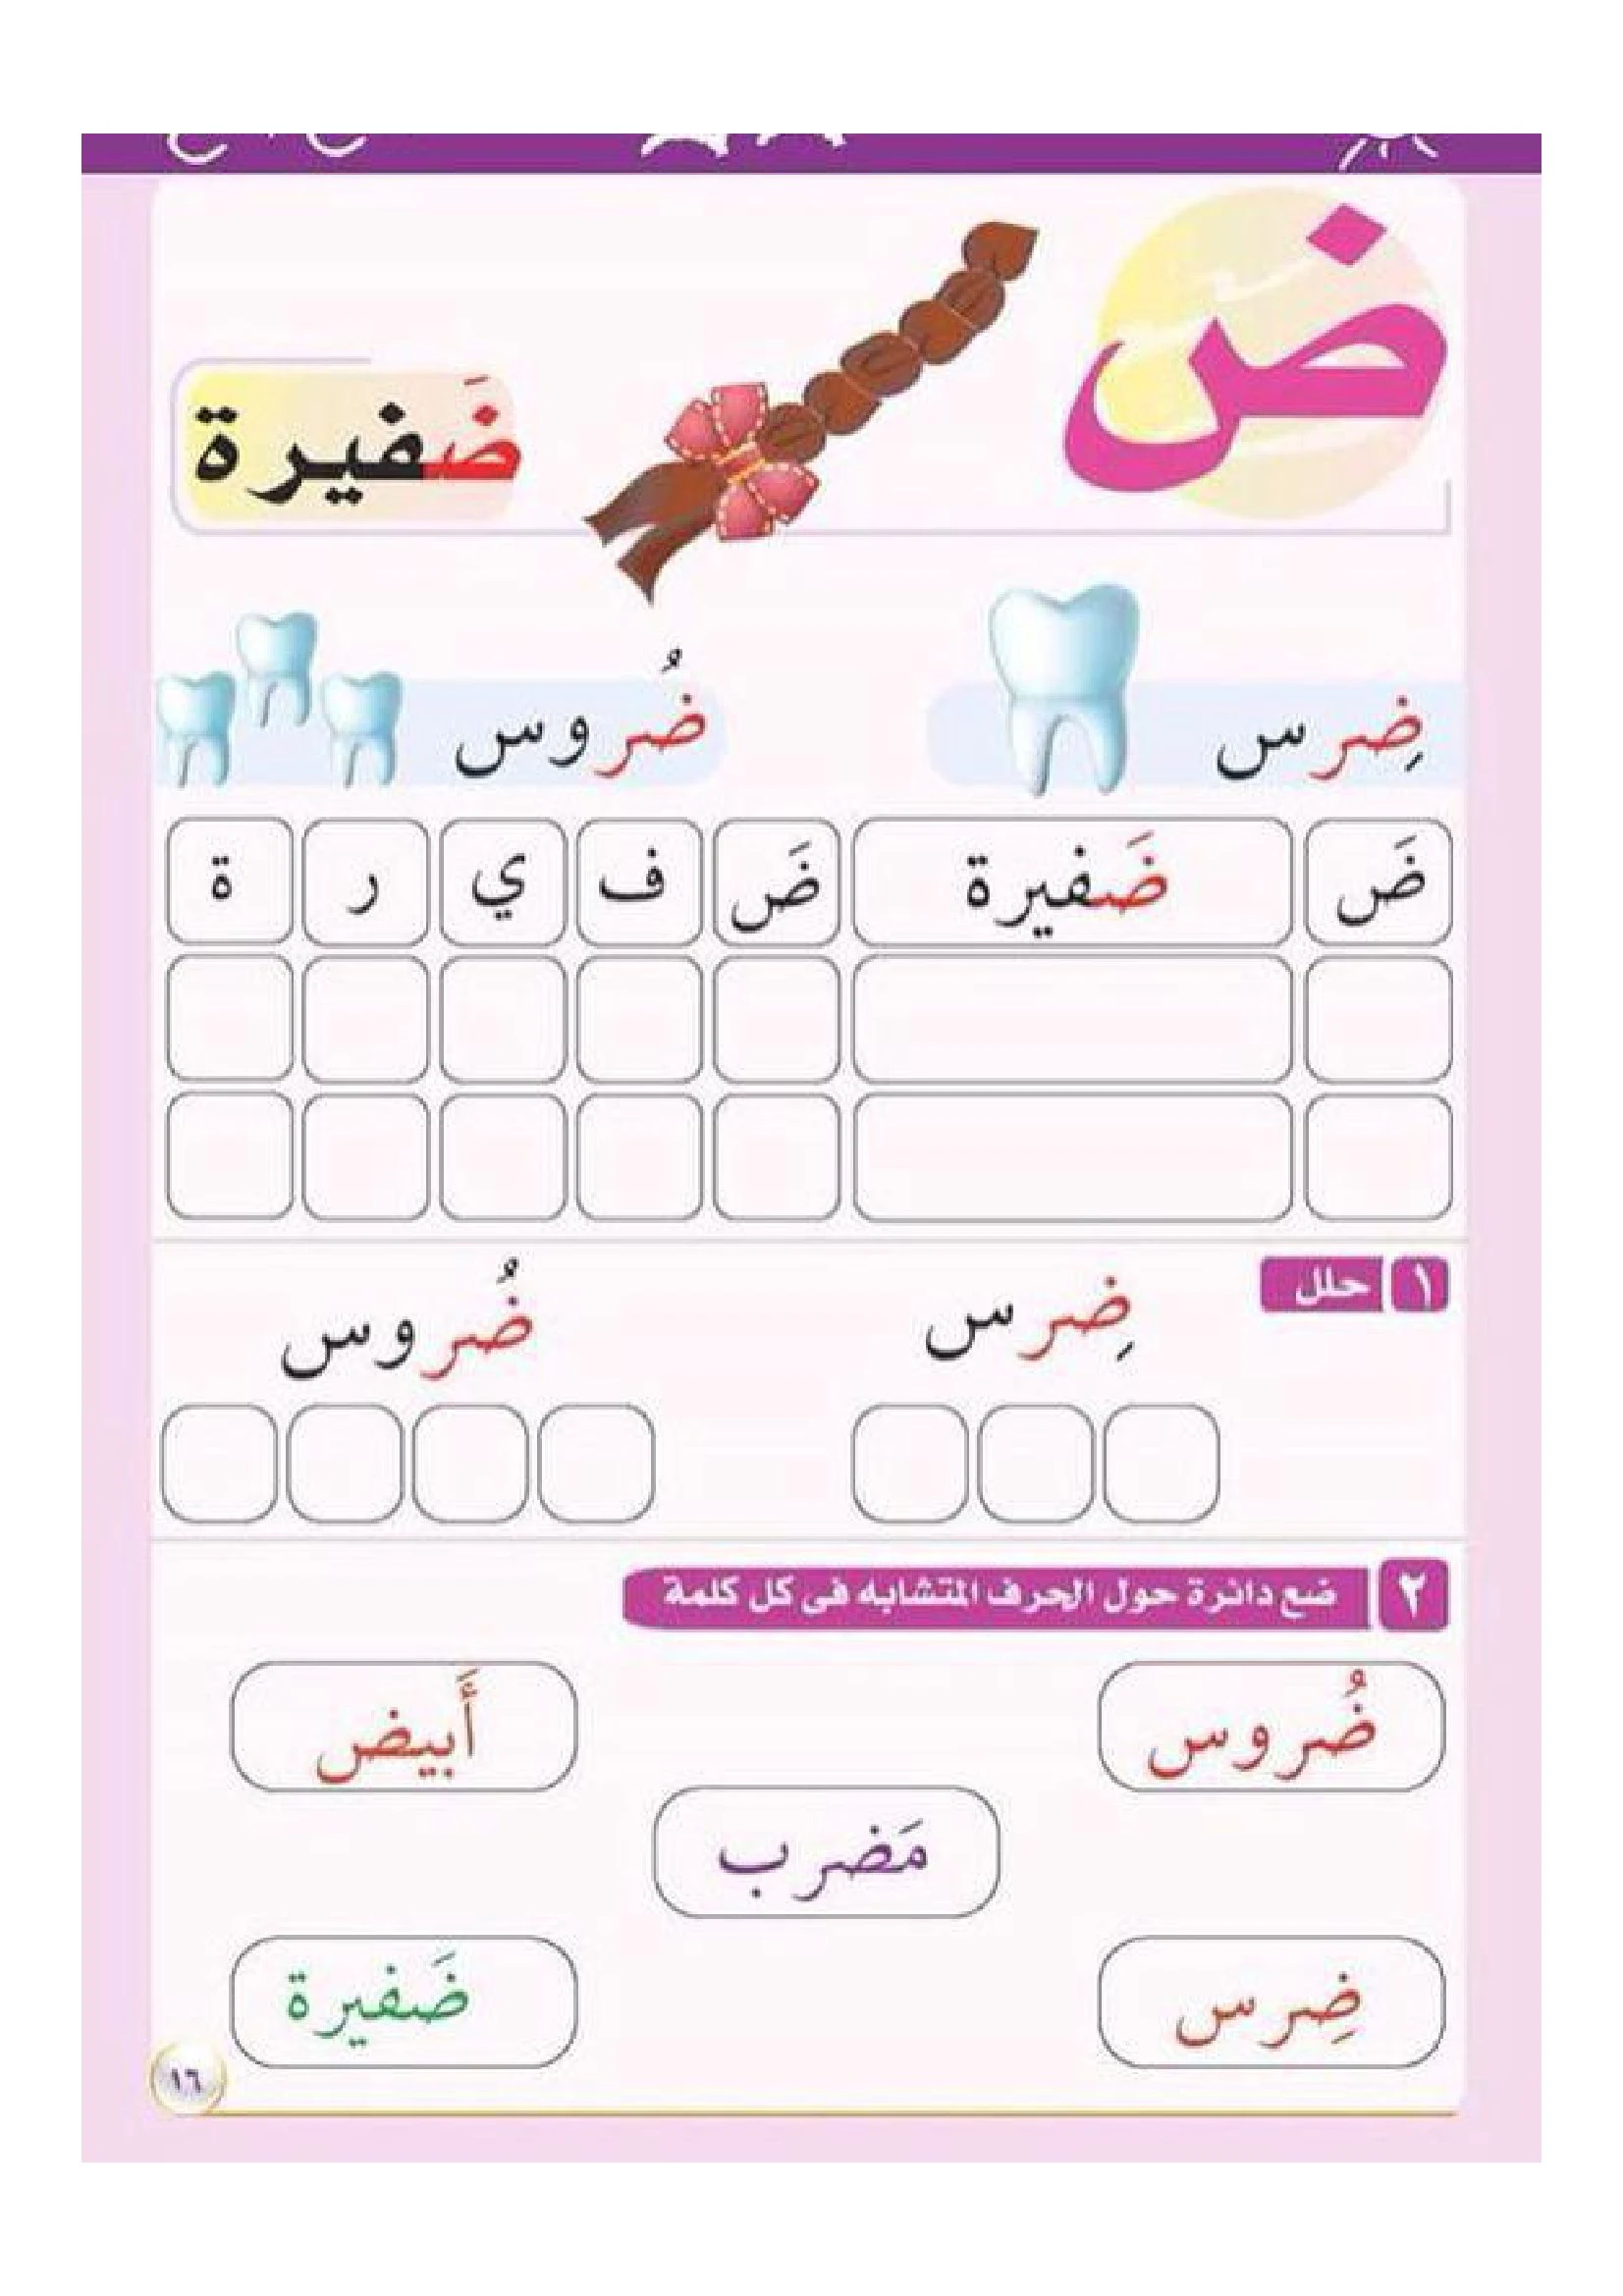 بطاقات تحليل وتركيب الحروف العربية من الألف الى الياءpdf تحميل مباشر